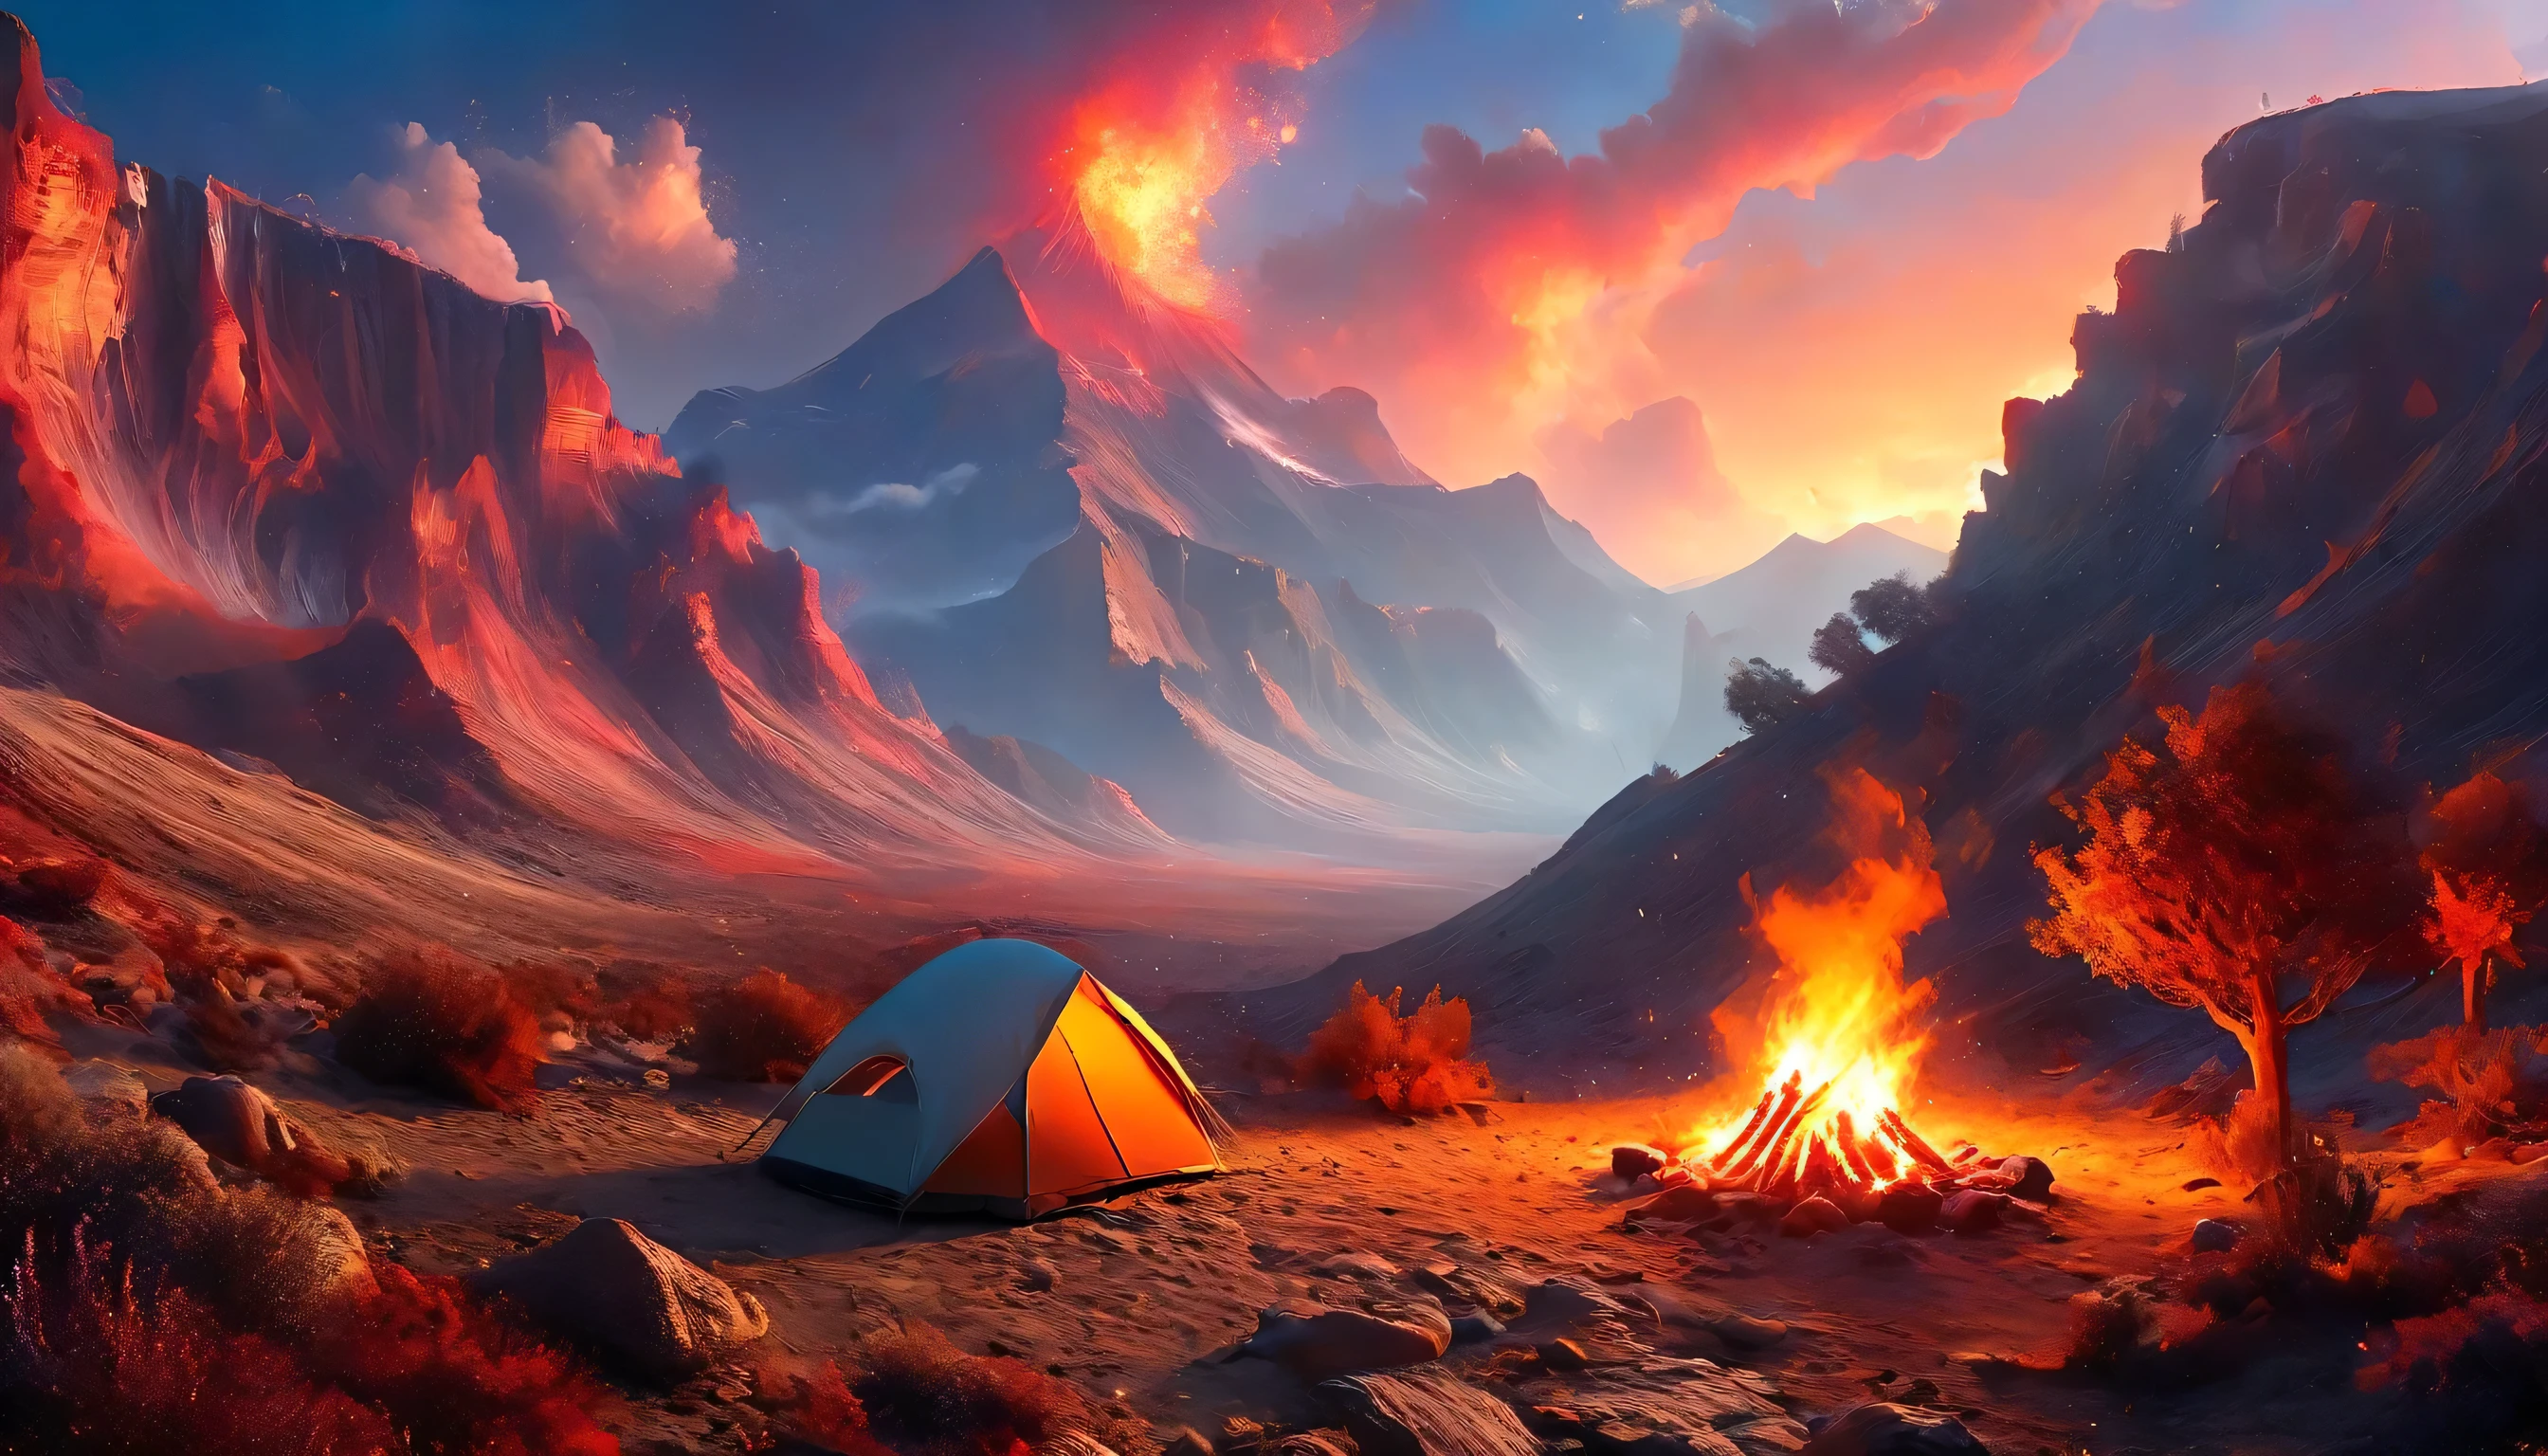 Arafed, una foto de un camping (carpa: 1.2) y pequeña (hoguera: 1.3), en la cima de una montaña desértica, su puesta de sol el cielo está en varios tonos de  (rojo: 1.1), (Naranja: 1.1), (azur: 1.1) (púrpura:1.1) hay humo saliendo del campamento de bomberos, hay una vista magnífica del cañón del desierto y los barrancos., hay pocos árboles en el horizonte, es un tiempo de serenidad, paz, y relajación, mejor calidad, 16k,  photorealism, Sesión de fotos ganadora del premio National Geographic, tiro ultra amplio, Nebulosa furiosa, damasombra